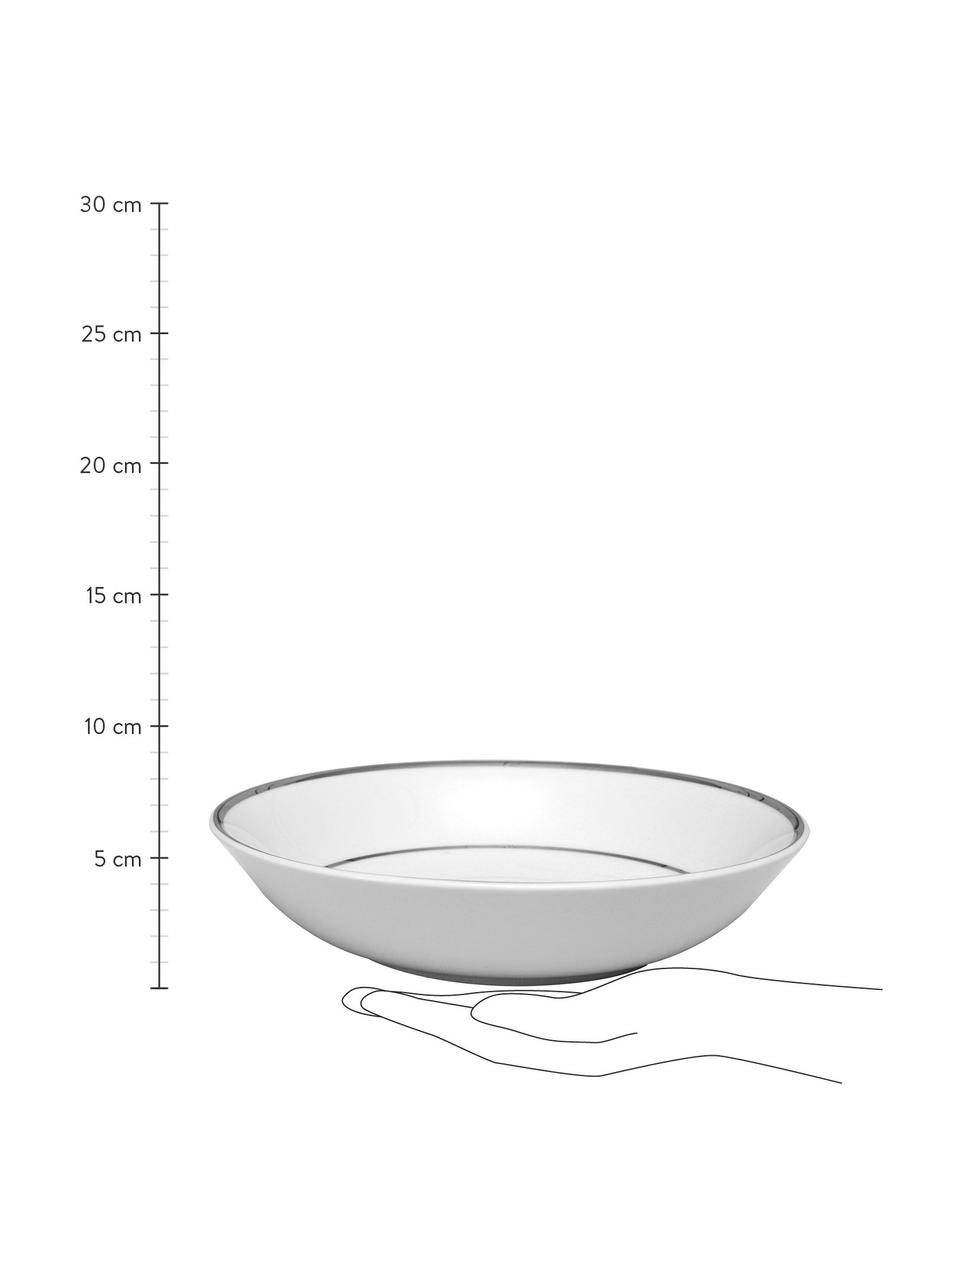 Porzellan-Suppenteller Ginger mit silberfarbenem Rand, 6 Stück, Porzellan, Weiss, Silberfarben, Ø 23 x H 5 cm